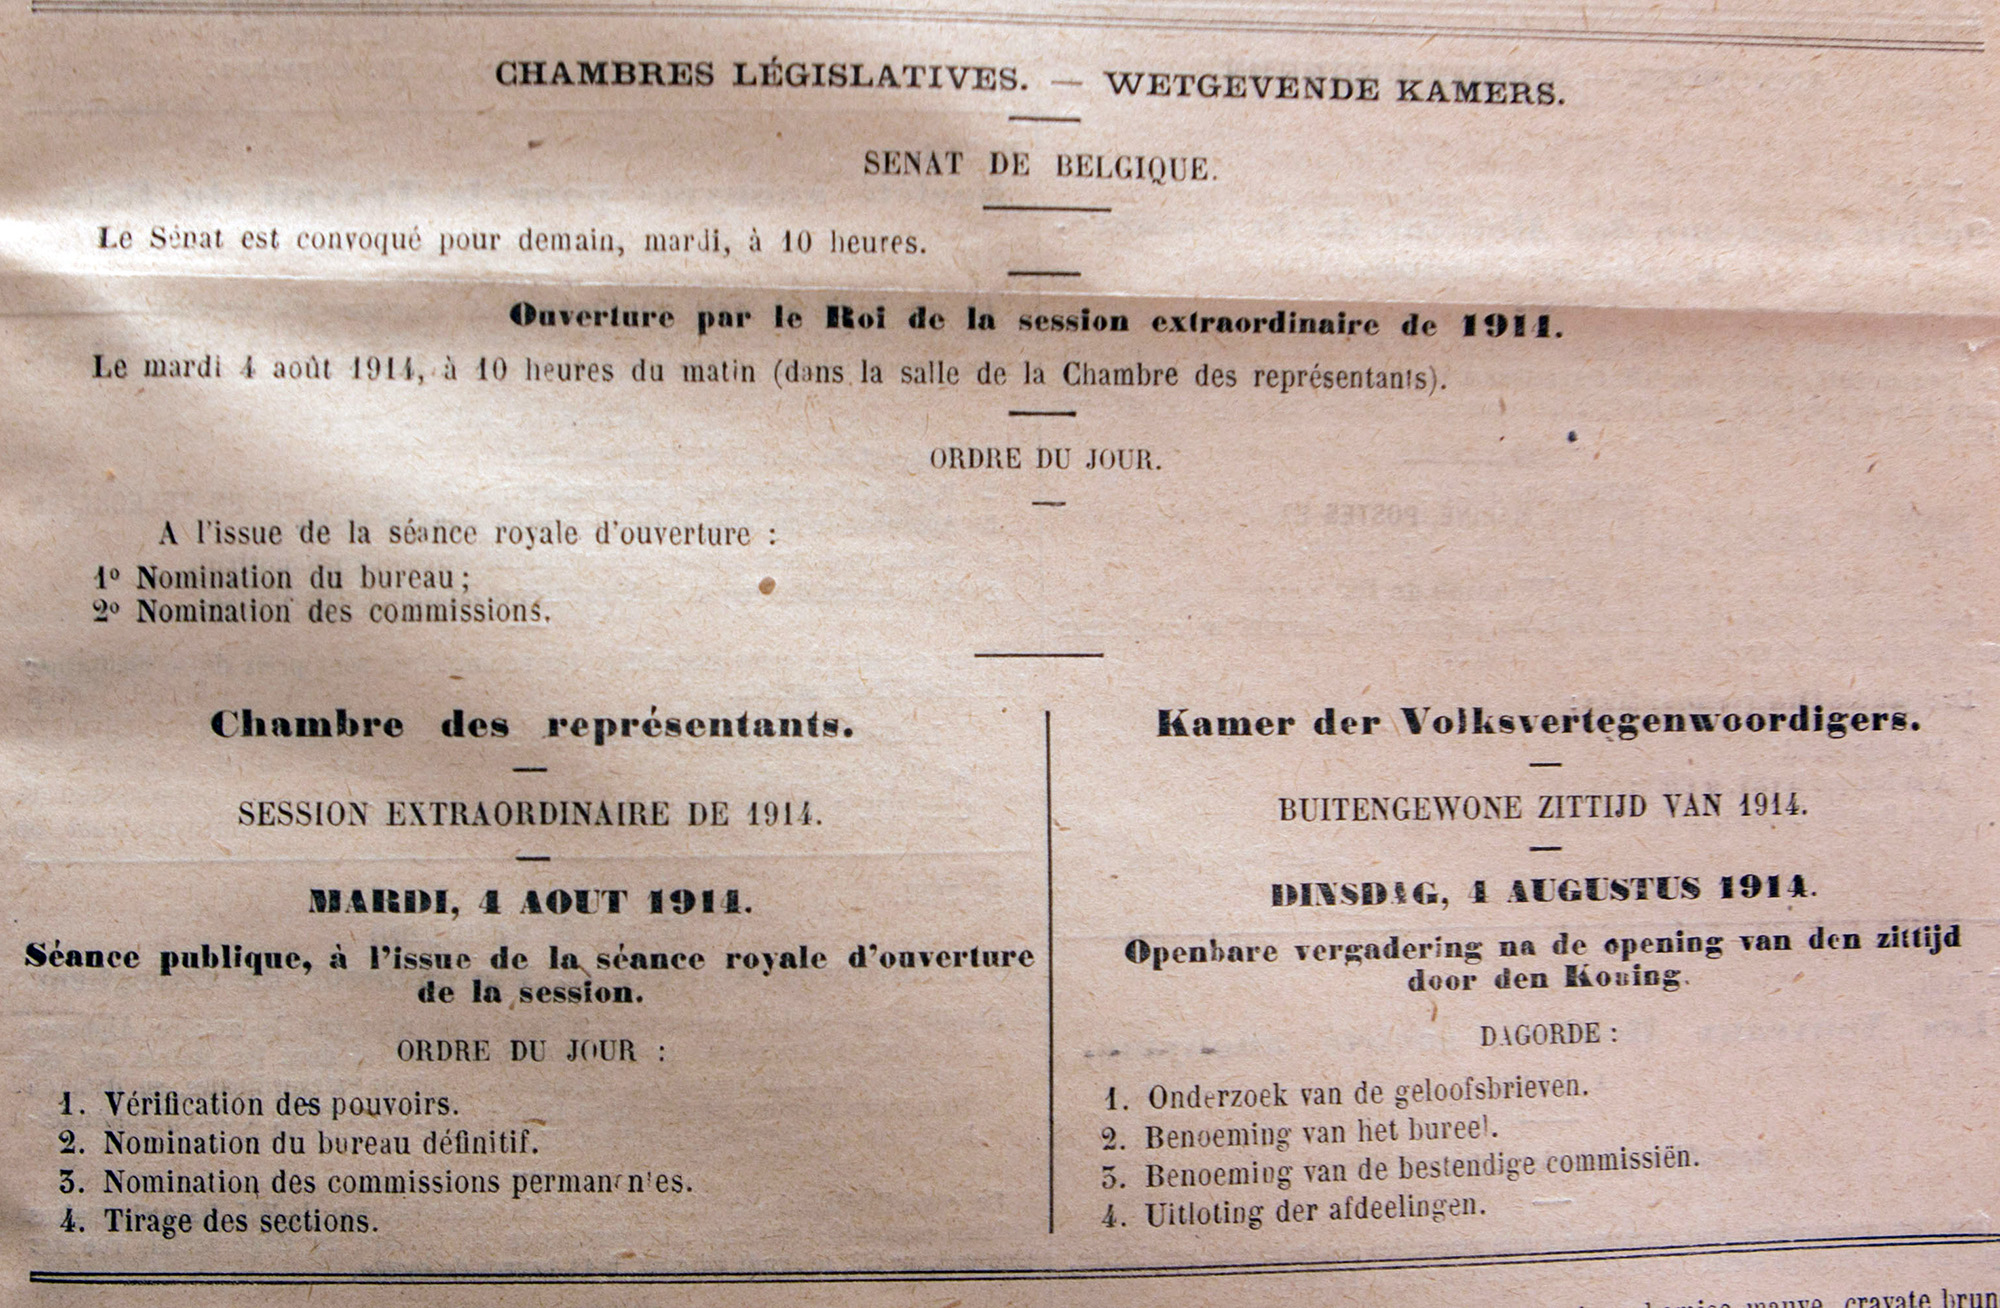 Publicatie in het Belgisch Staatsblad van 4 augustus 1914